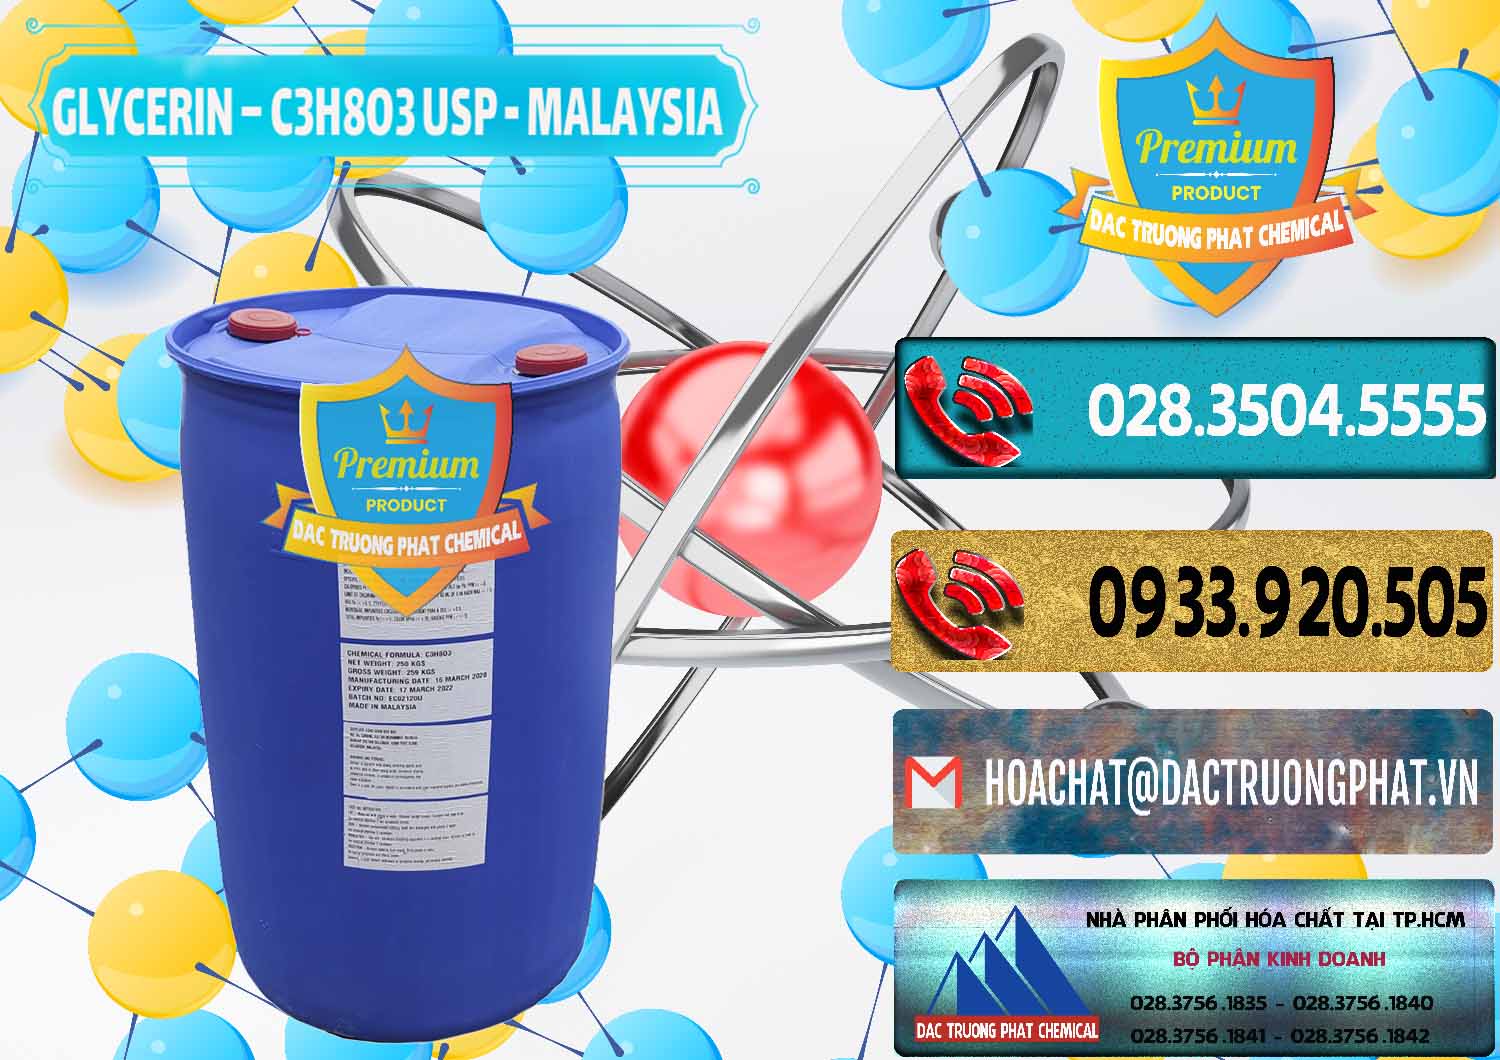 Kinh doanh - bán Glycerin – C3H8O3 USP Malaysia - 0233 - Cty chuyên cung cấp - nhập khẩu hóa chất tại TP.HCM - hoachatdetnhuom.com